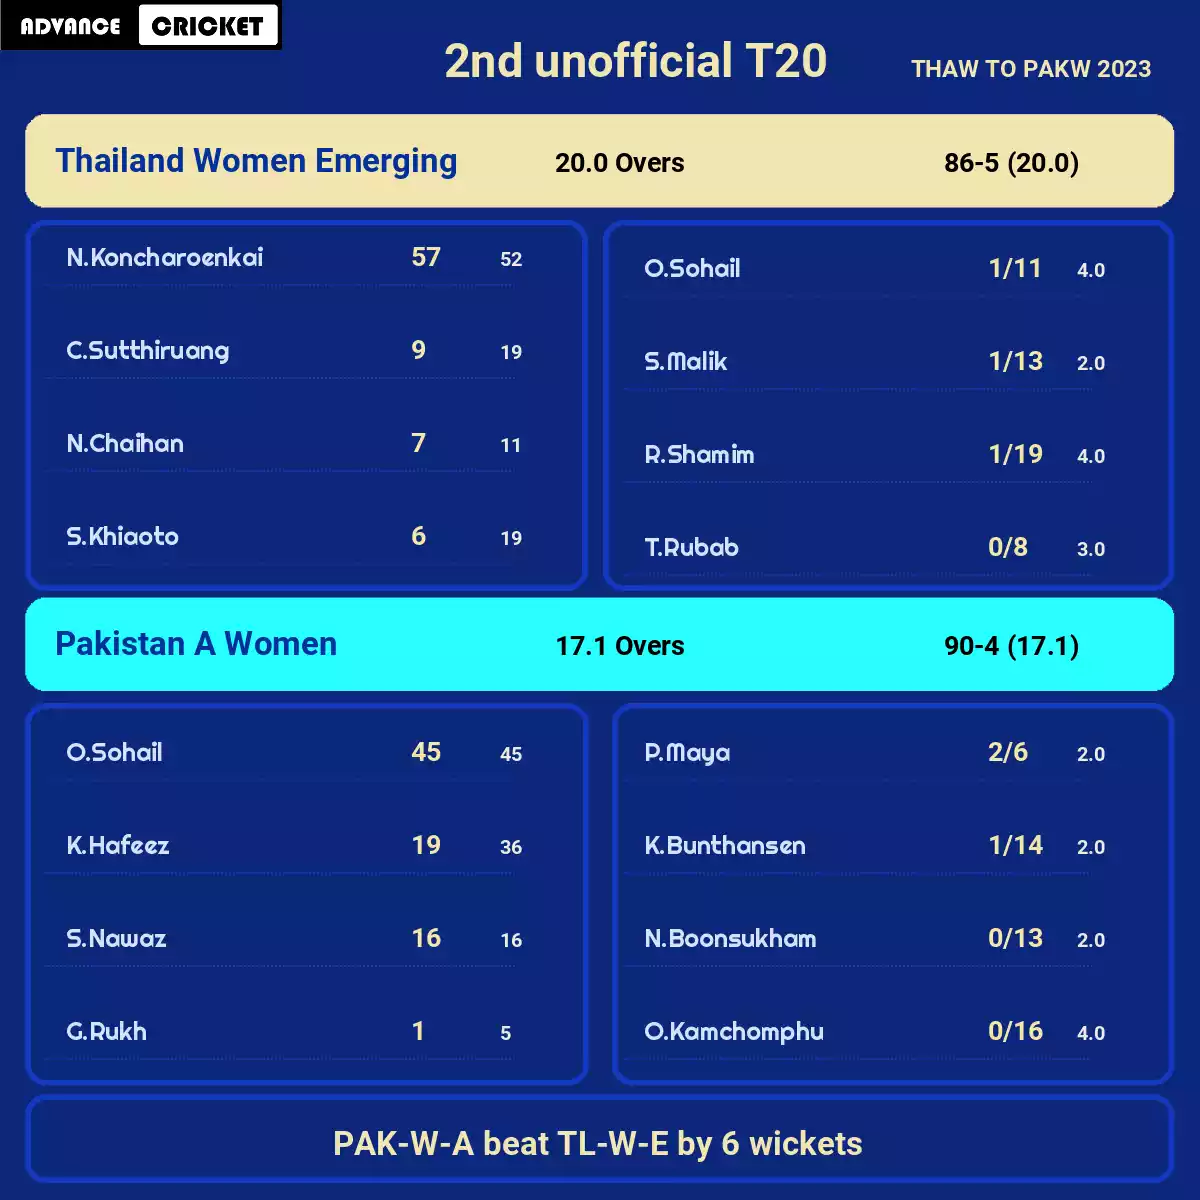 PAK-W-A vs TL-W-E 2nd unofficial T20 THAW TO PAKW 2023